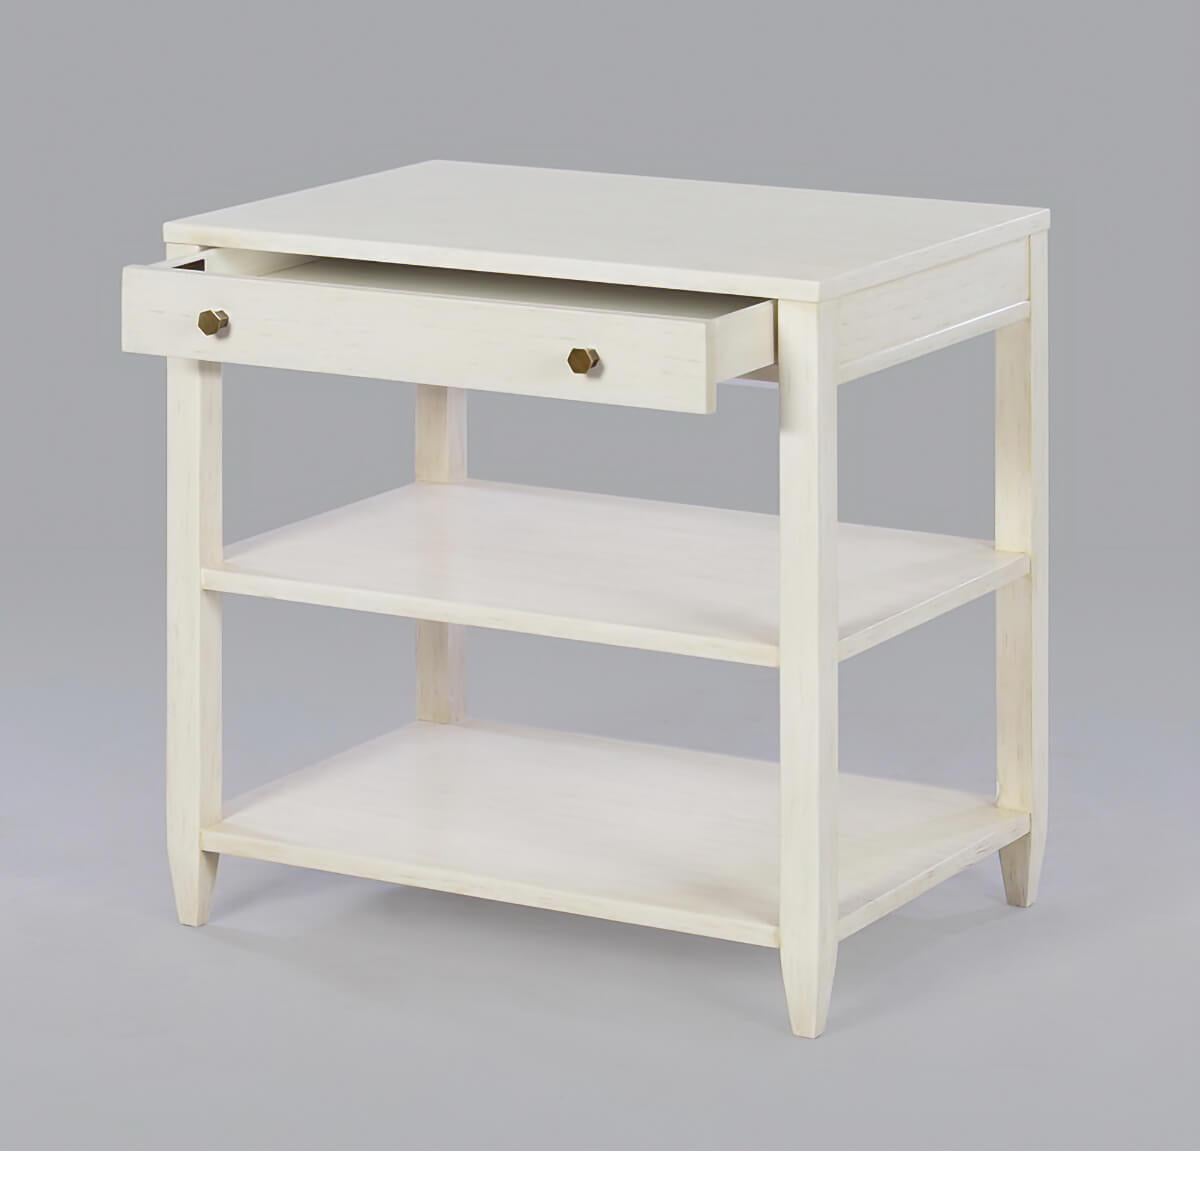 Table d'appoint rectangulaire large classique avec un tiroir, deux étagères, des ferrures en laiton et des pieds effilés, a une finition rustique peinte en blanc 